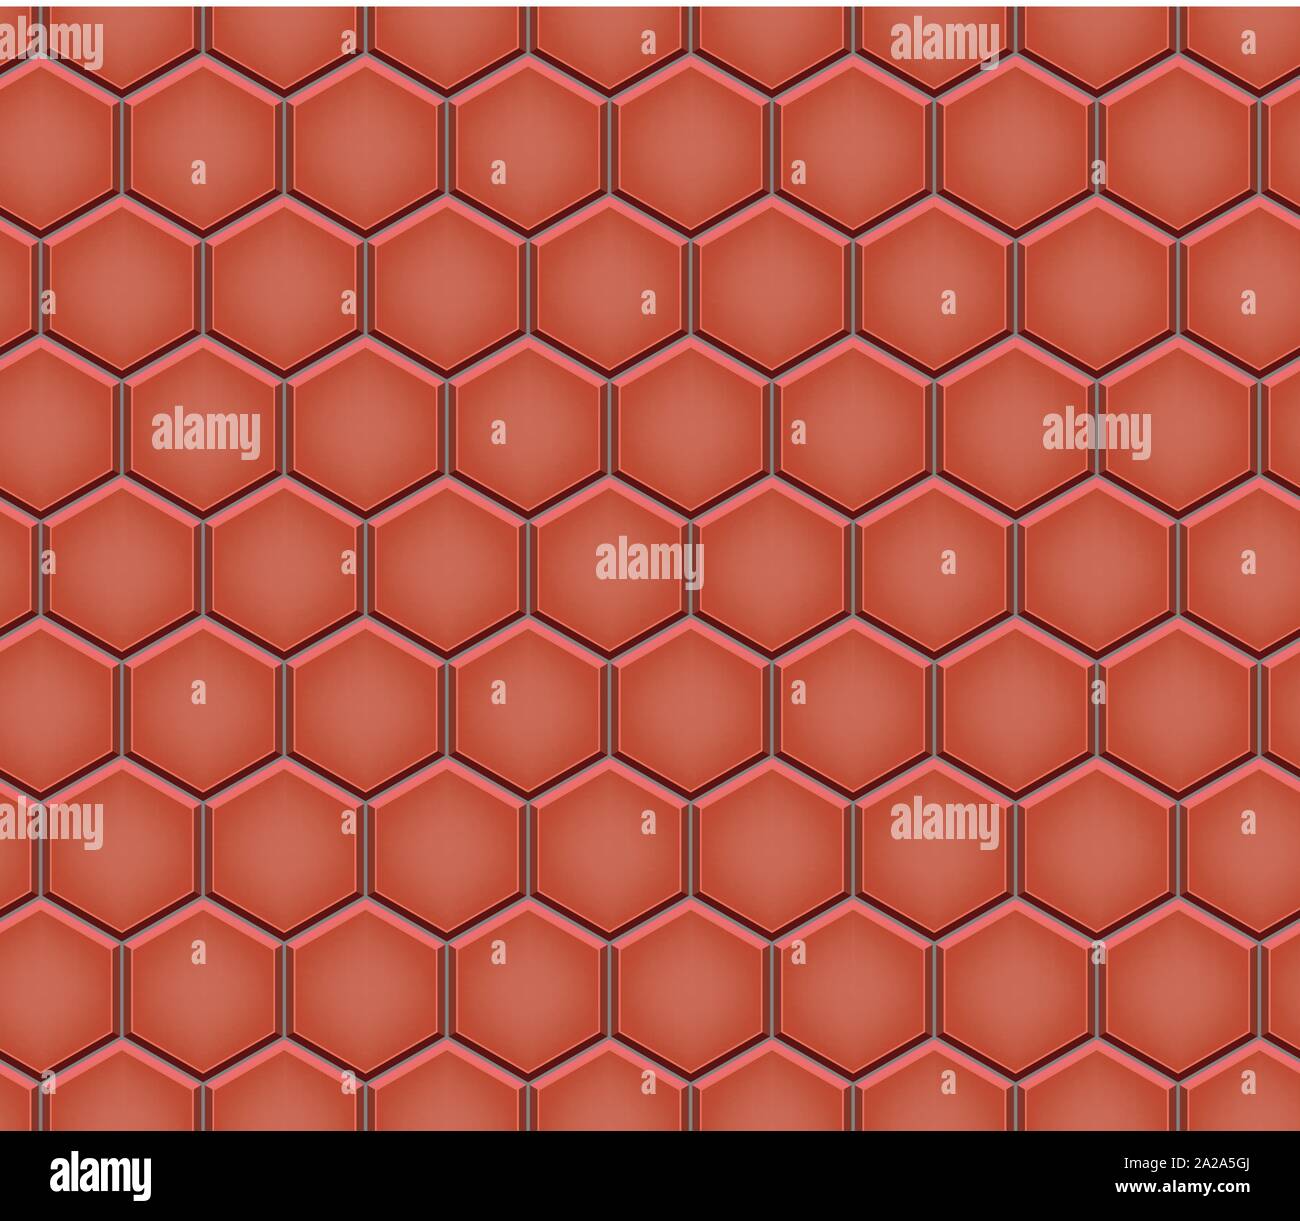 Patrón sin fisuras del pavimento de adoquines hexagonales Ilustración del Vector